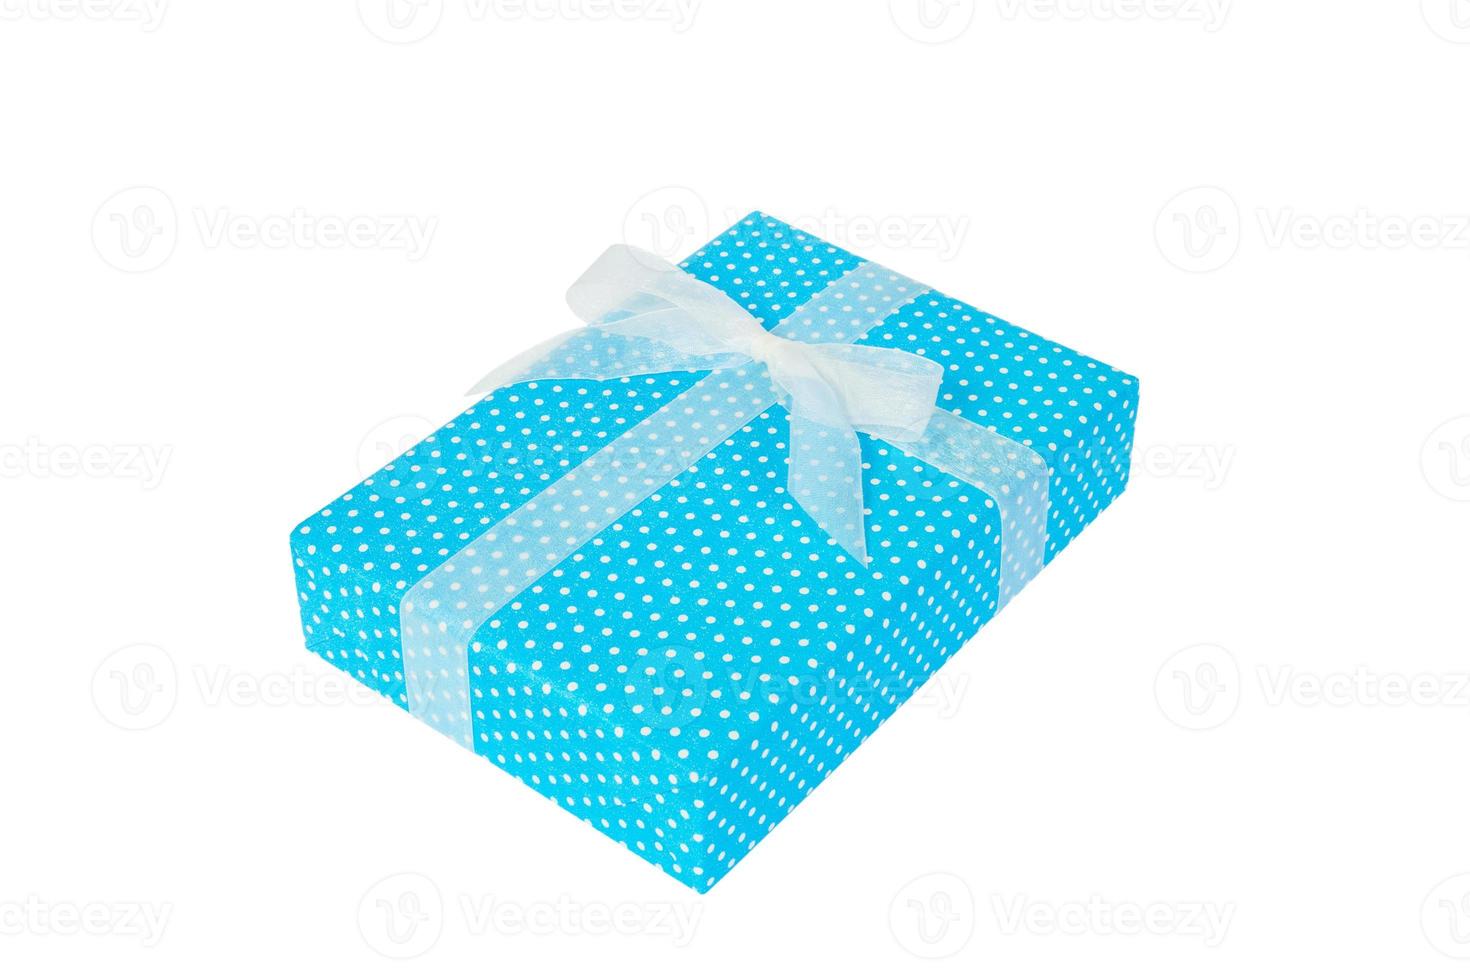 navidad u otro regalo hecho a mano en papel azul con cinta blanca. aislado sobre fondo blanco, vista superior. concepto de caja de regalo de acción de gracias foto